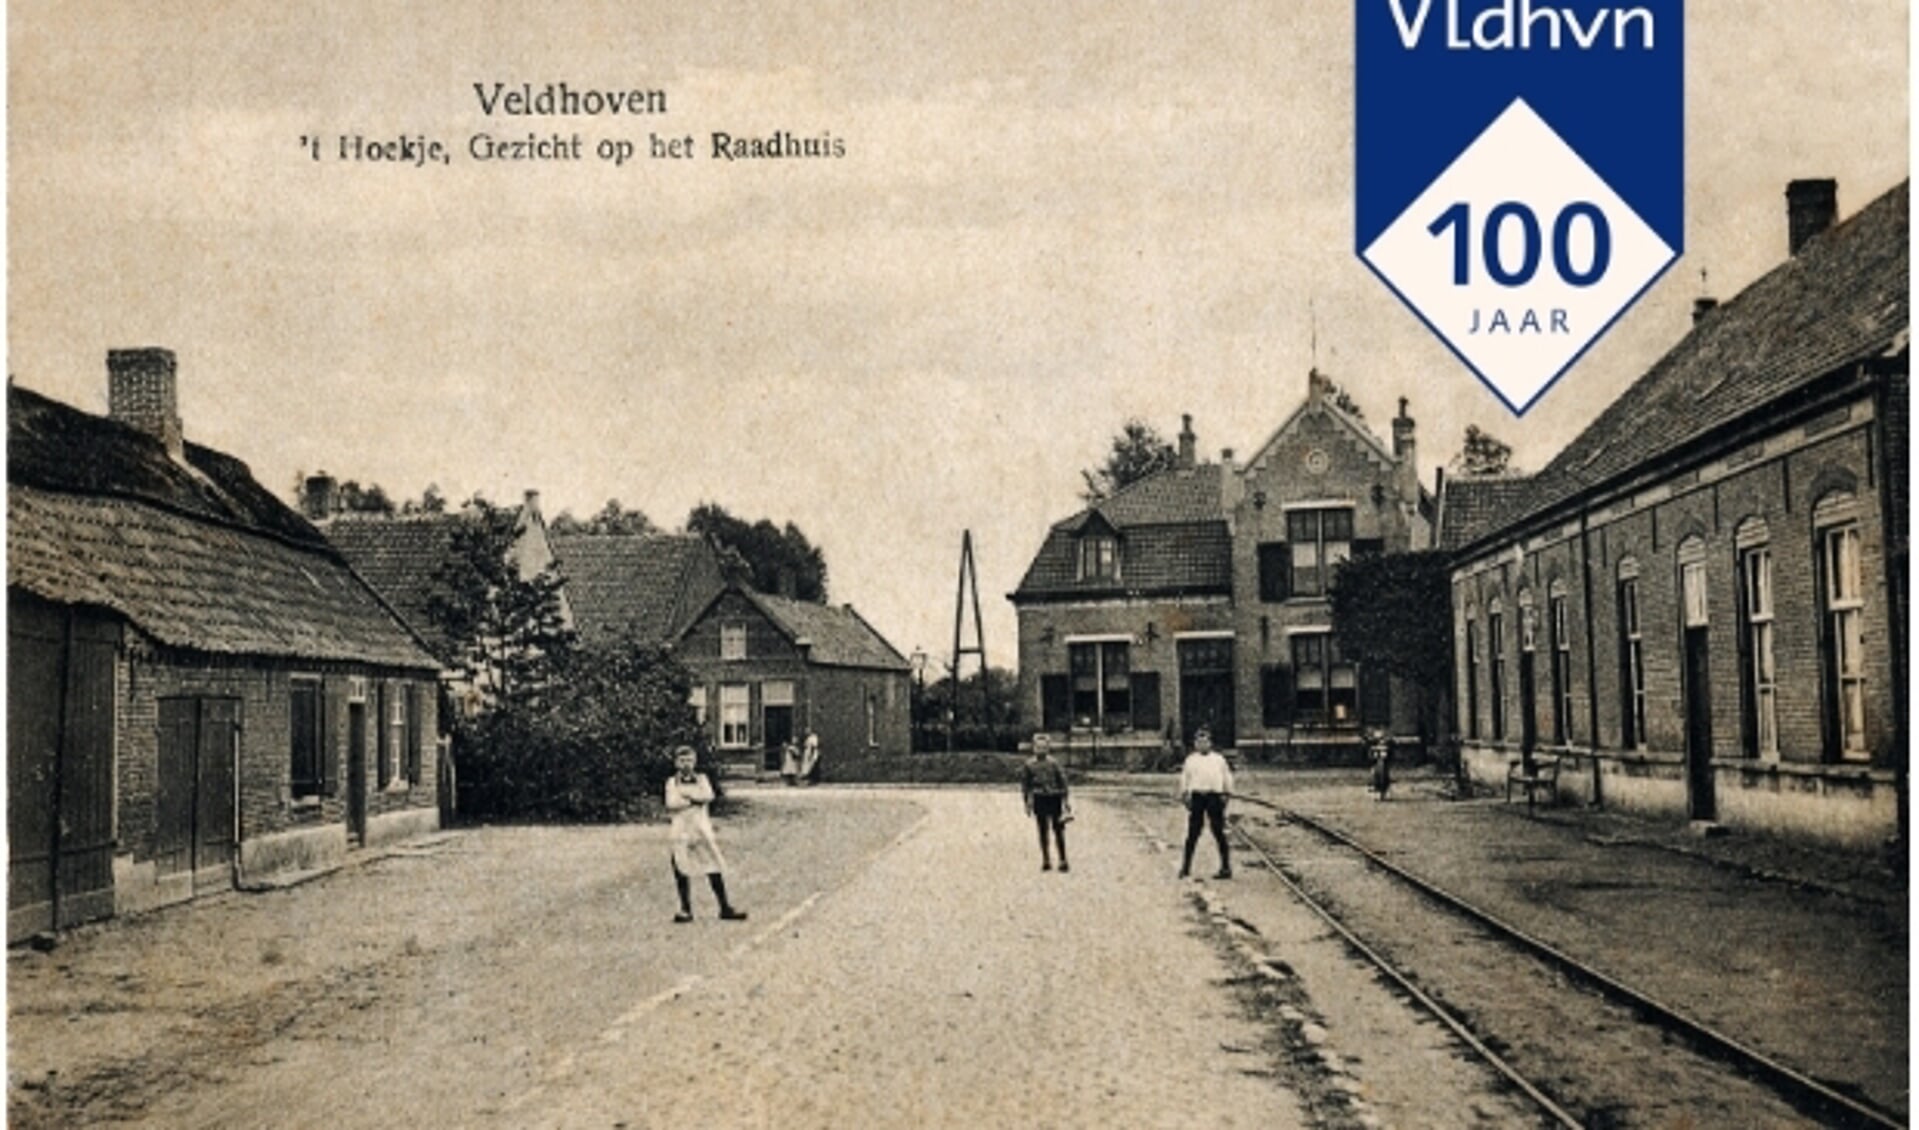 Herontdek de geschiedenis van Veldhoven in een bijzondere expositie vol foto’s, objecten en verhalen! 